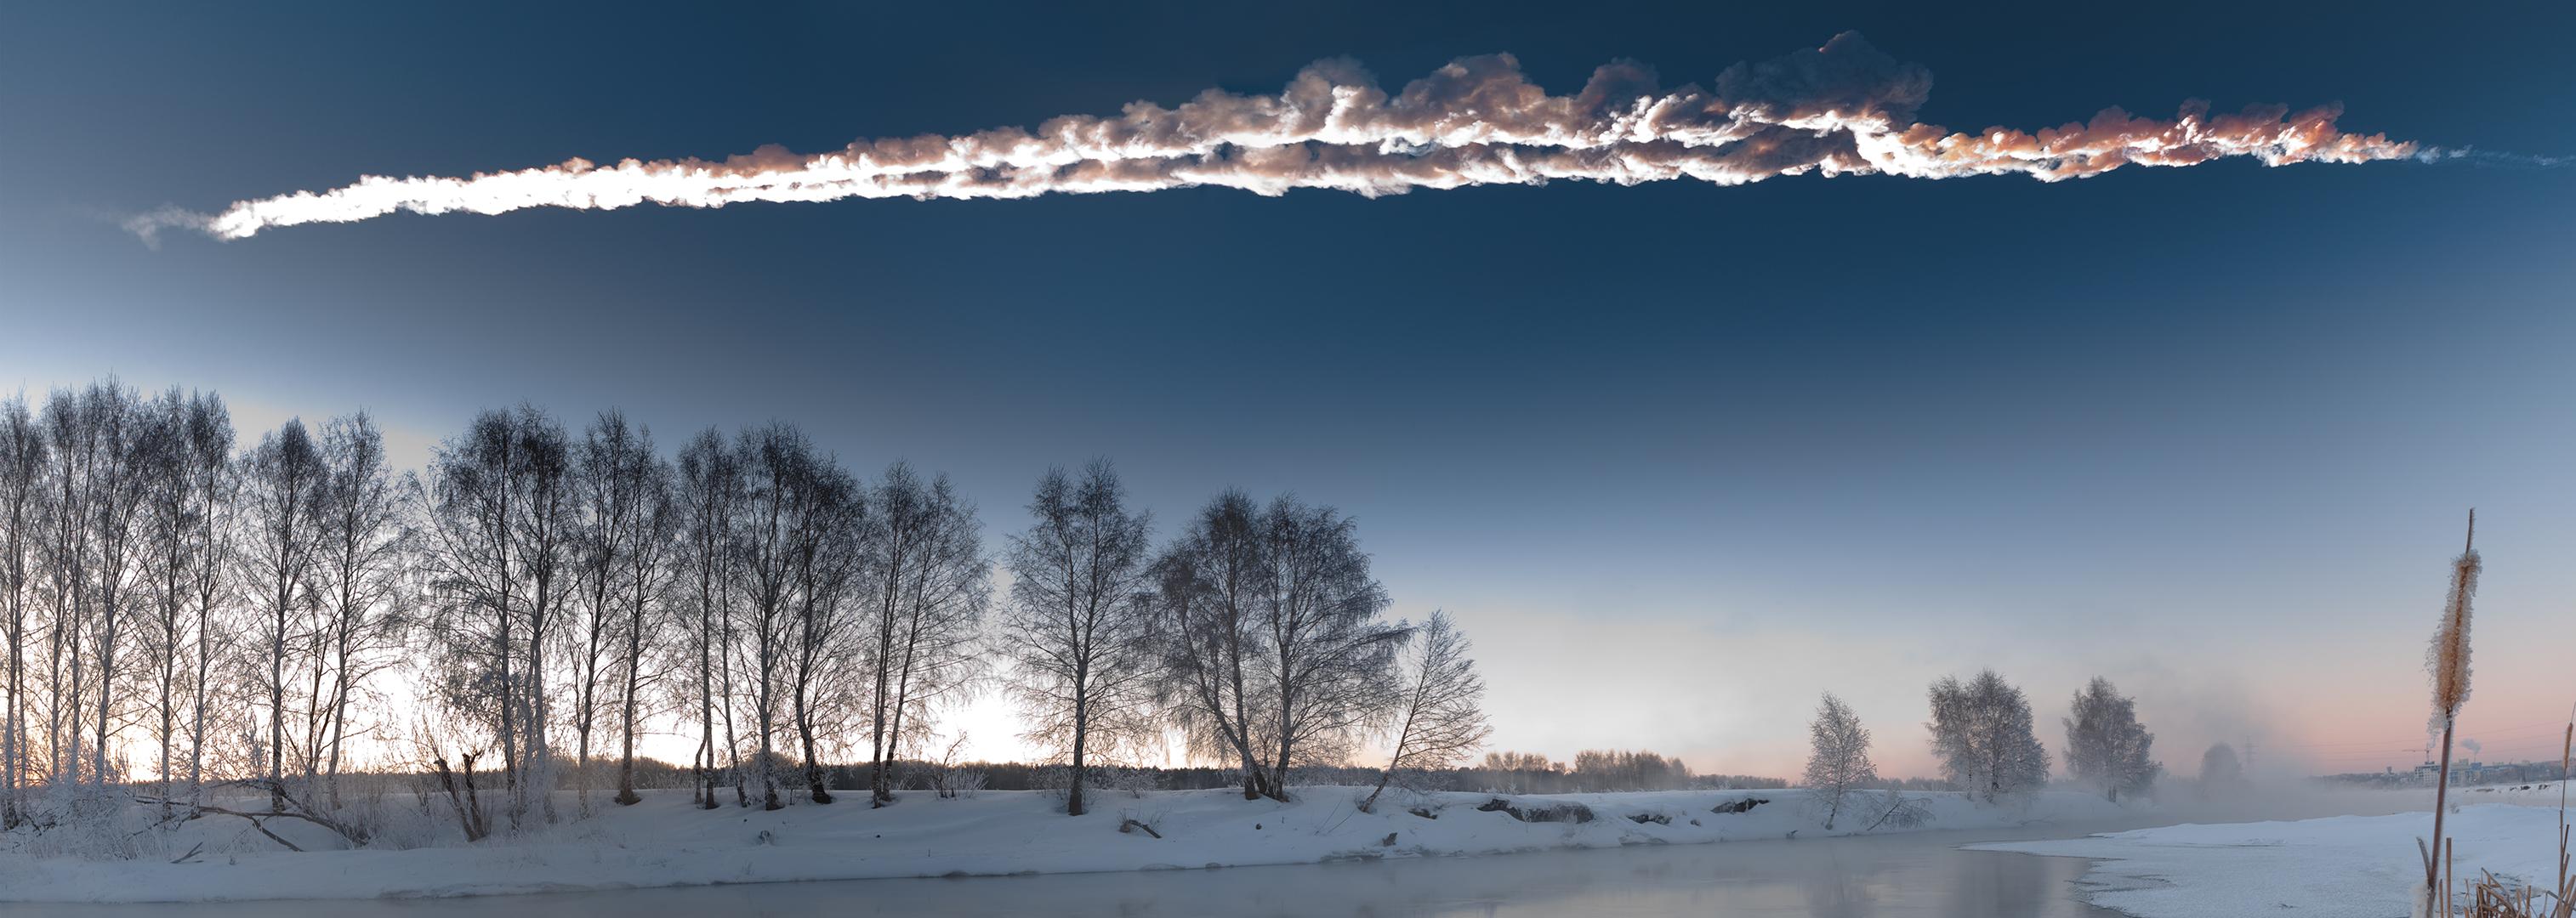 La double traînée de la météorite de Tcheliabinsk a été photographiée alors qu'elle fendait le ciel de l'Oural, le matin du 15 février 2013. © M. Ahmetvaleev